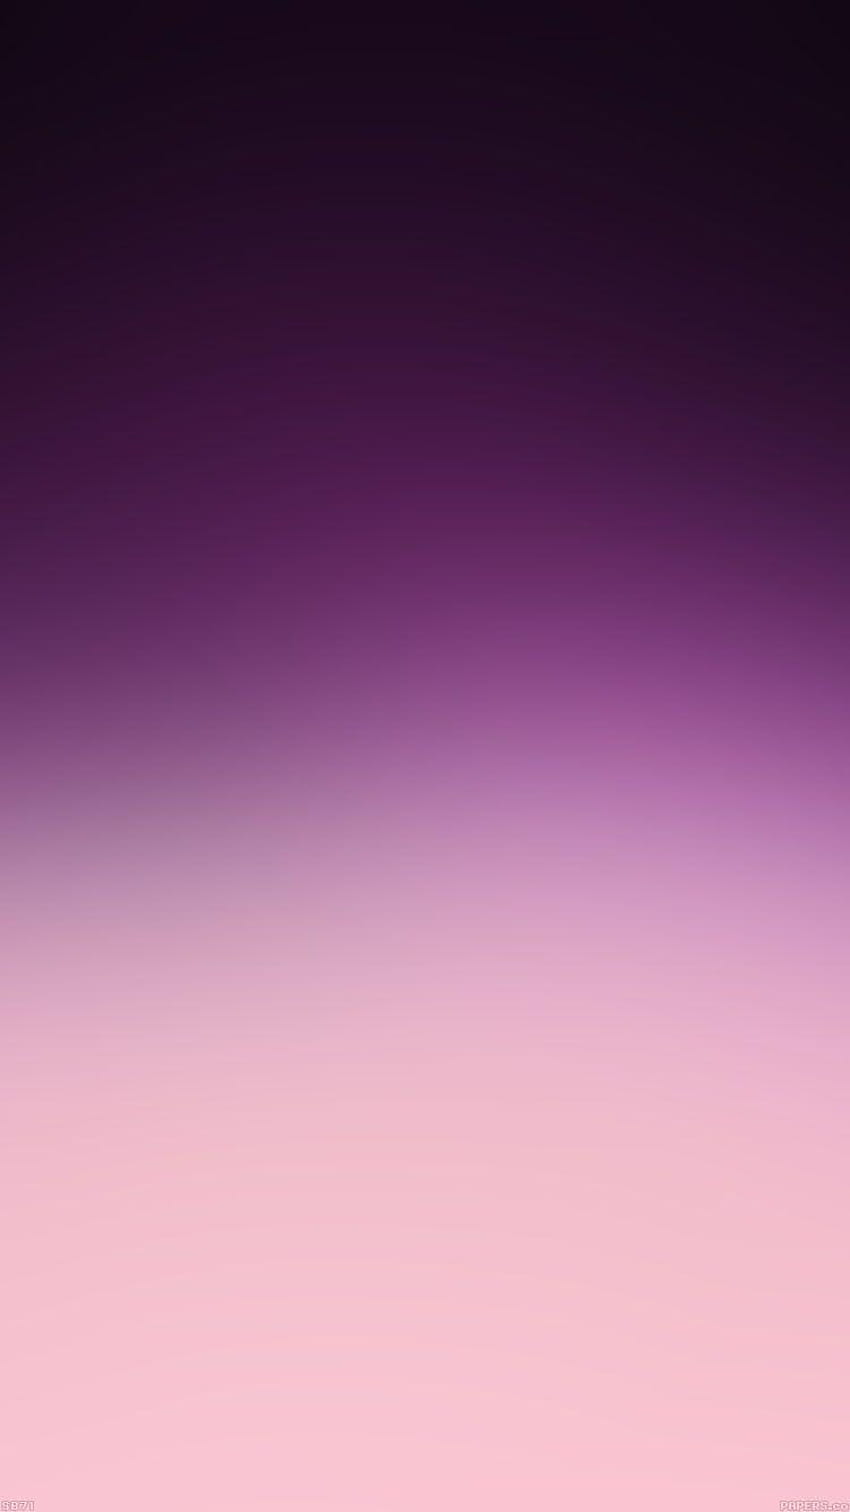 ↑↑TOQUE E OBTENHA O APLICATIVO! Unicolor Minimalistic Ombre Simples, roxo e cinza Papel de parede de celular HD